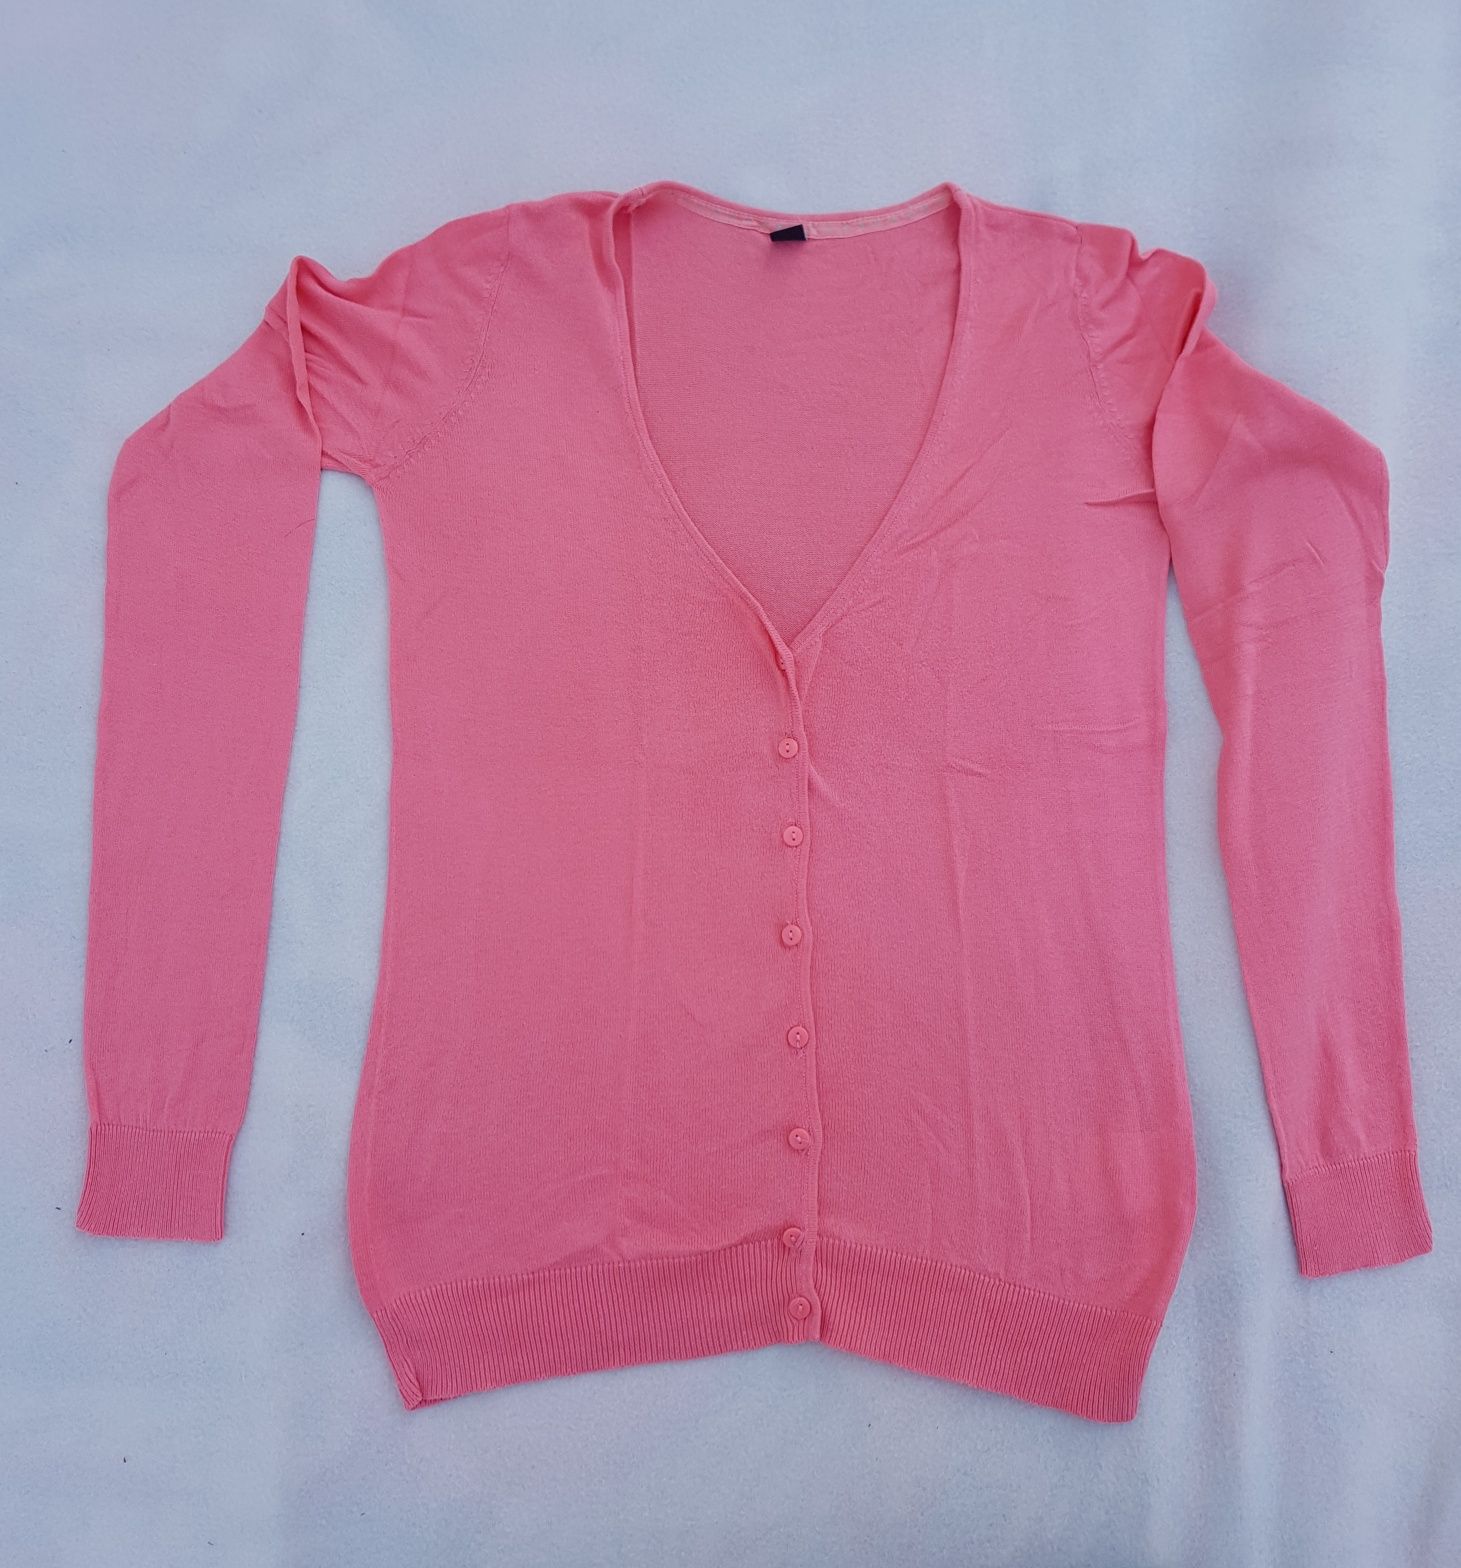 Letni, różowy sweterek rozm. 38 (M)